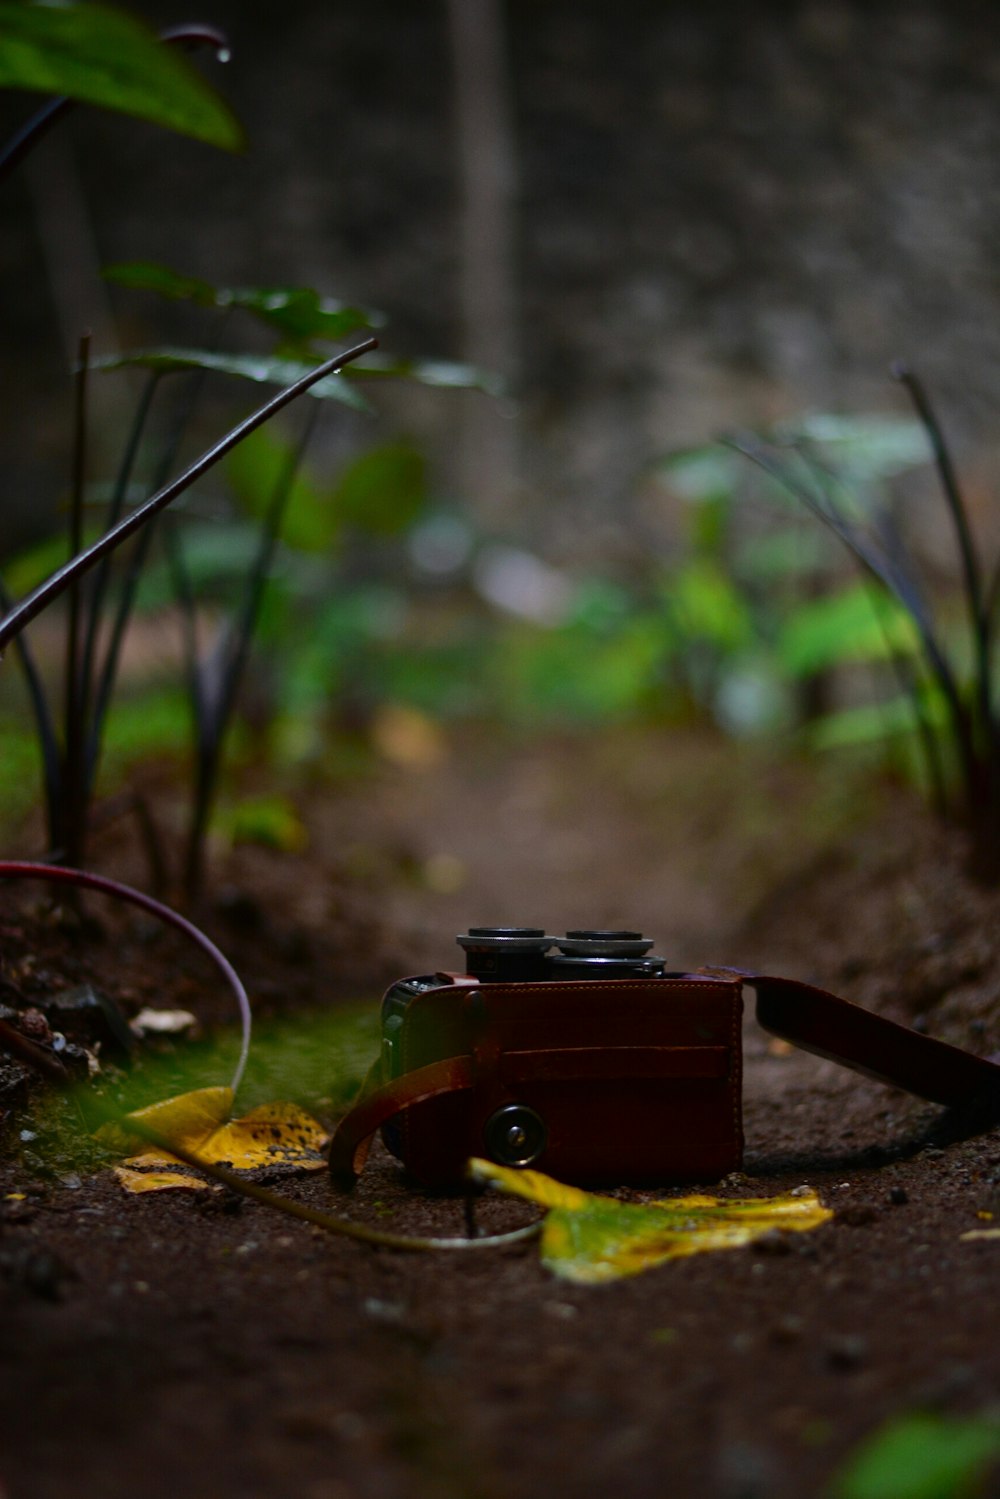 Caméra rouge sur le sol près des plantes vertes